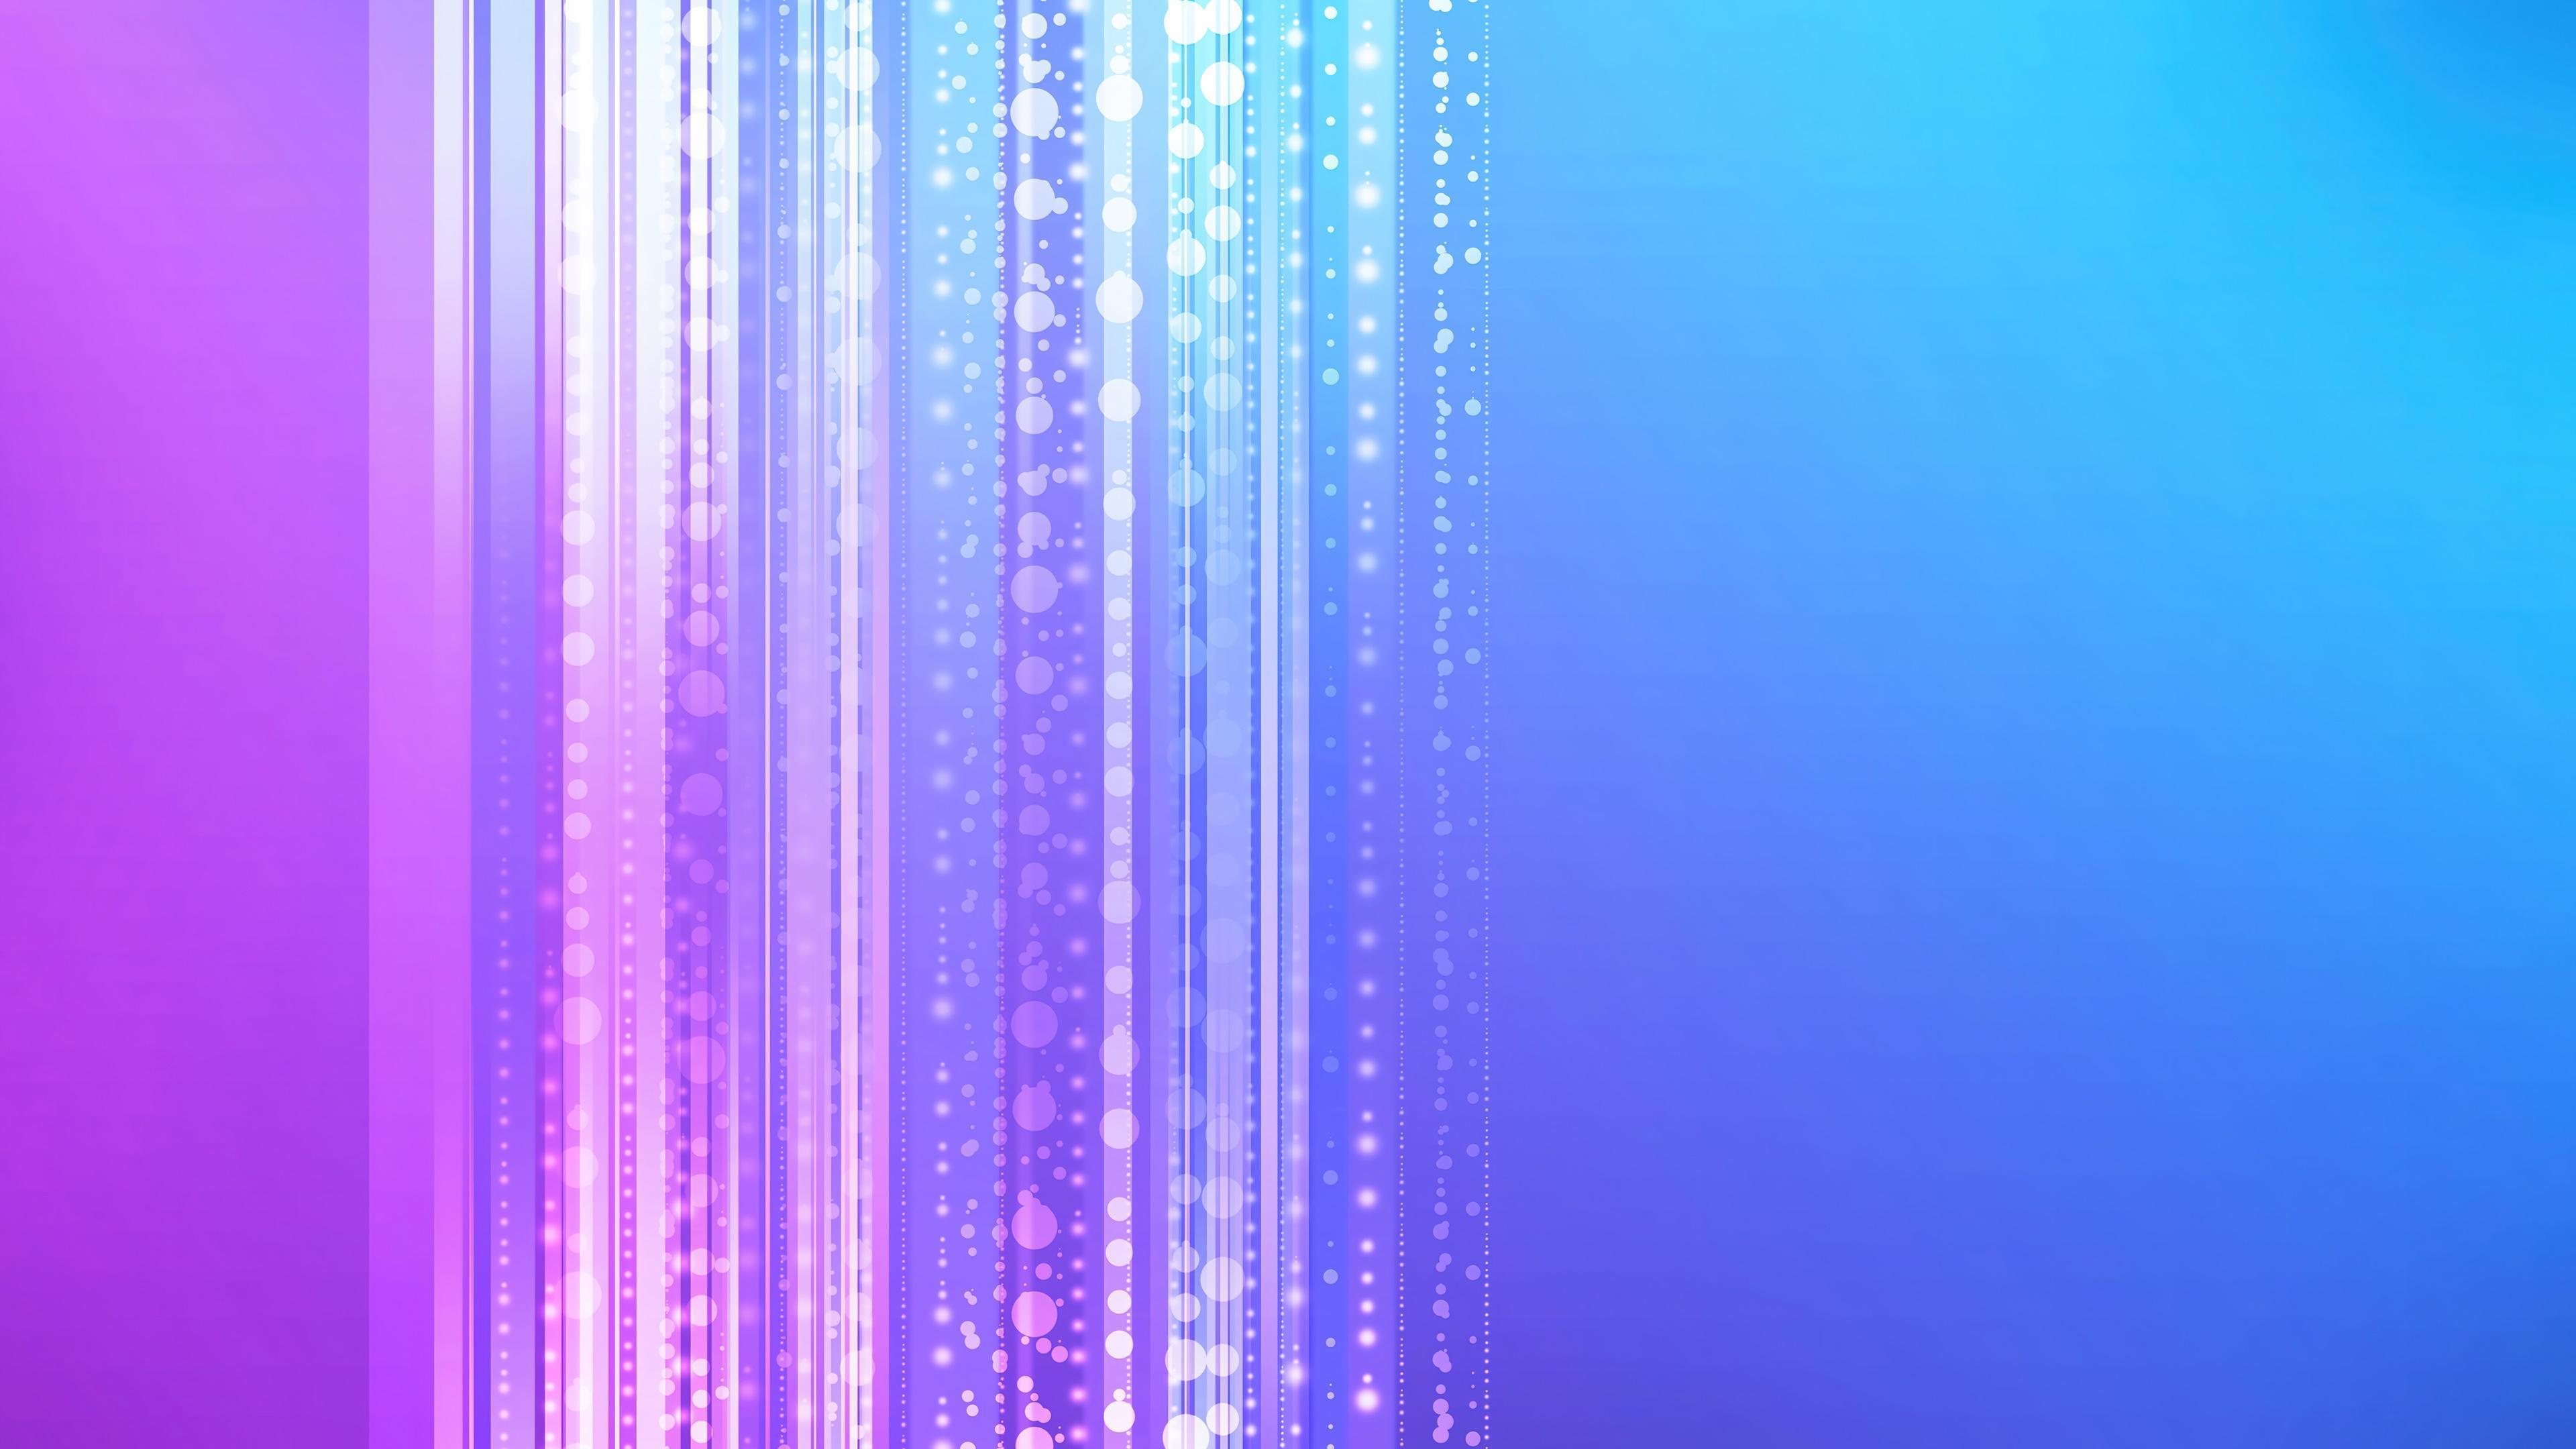 HD wallpaper, Purple, Background, Blue, Digital Art, 4K